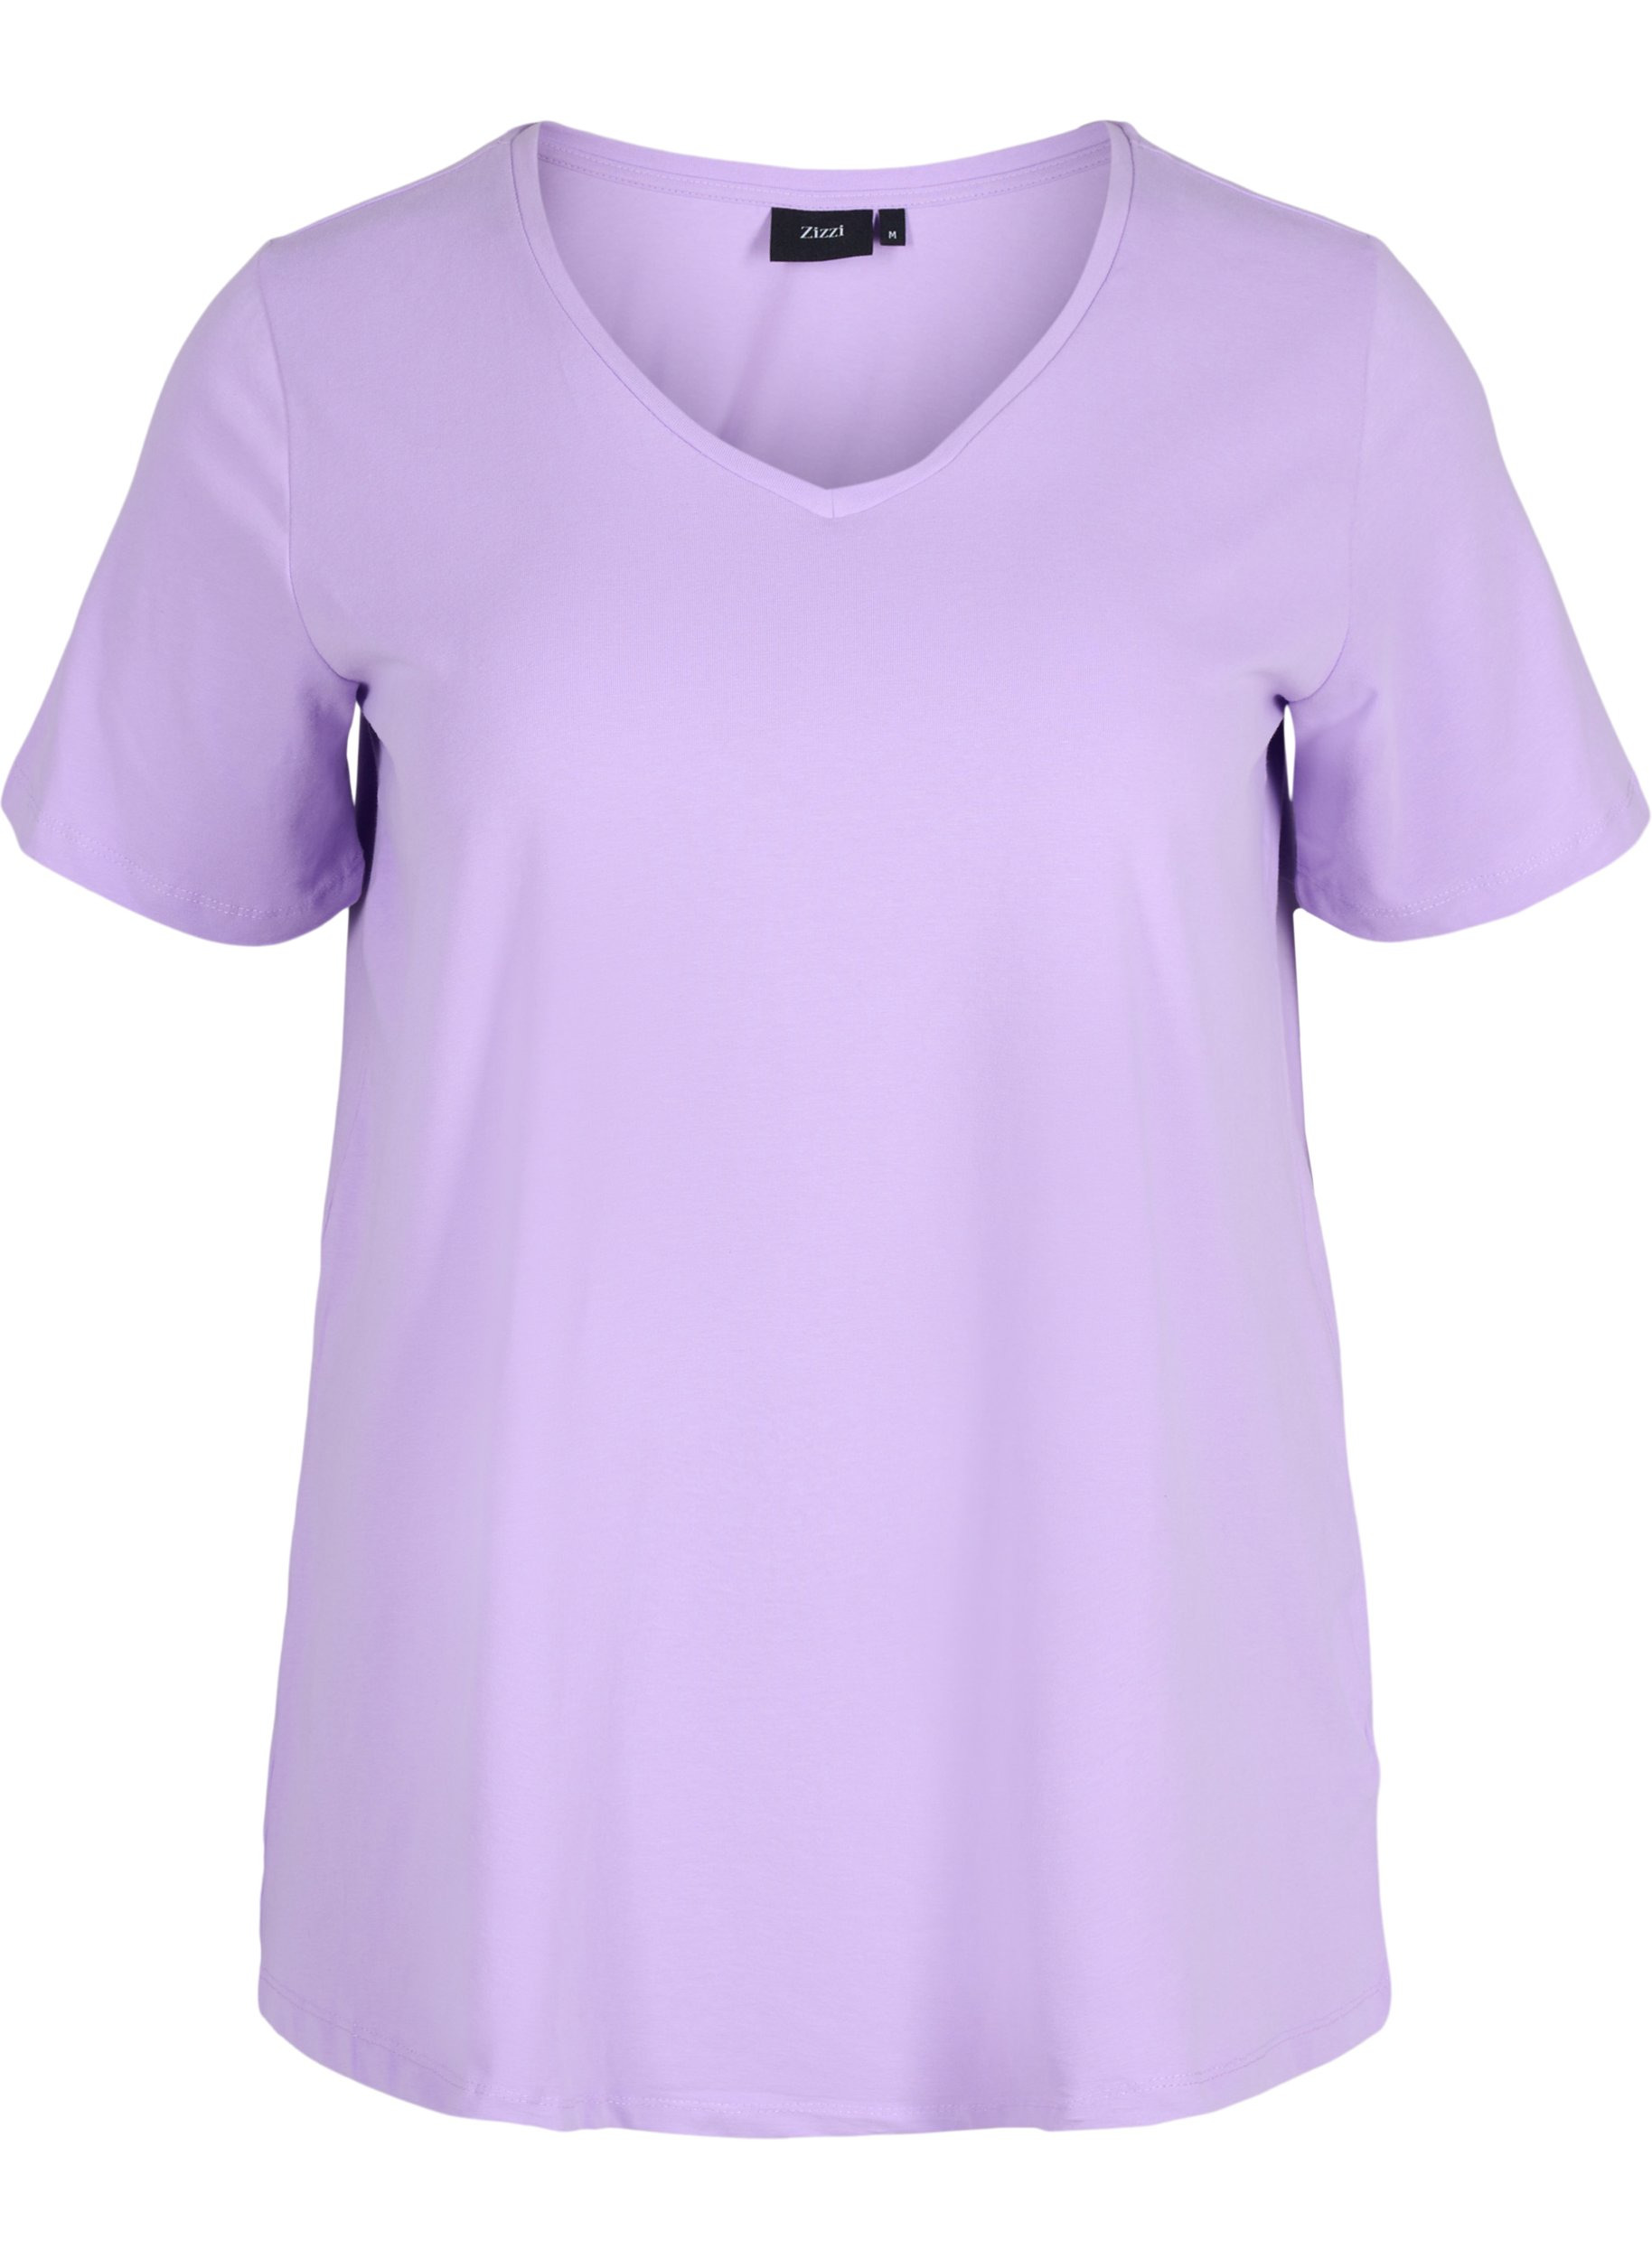 Basic t-shirt - Purple - Sz. 42-60 ...